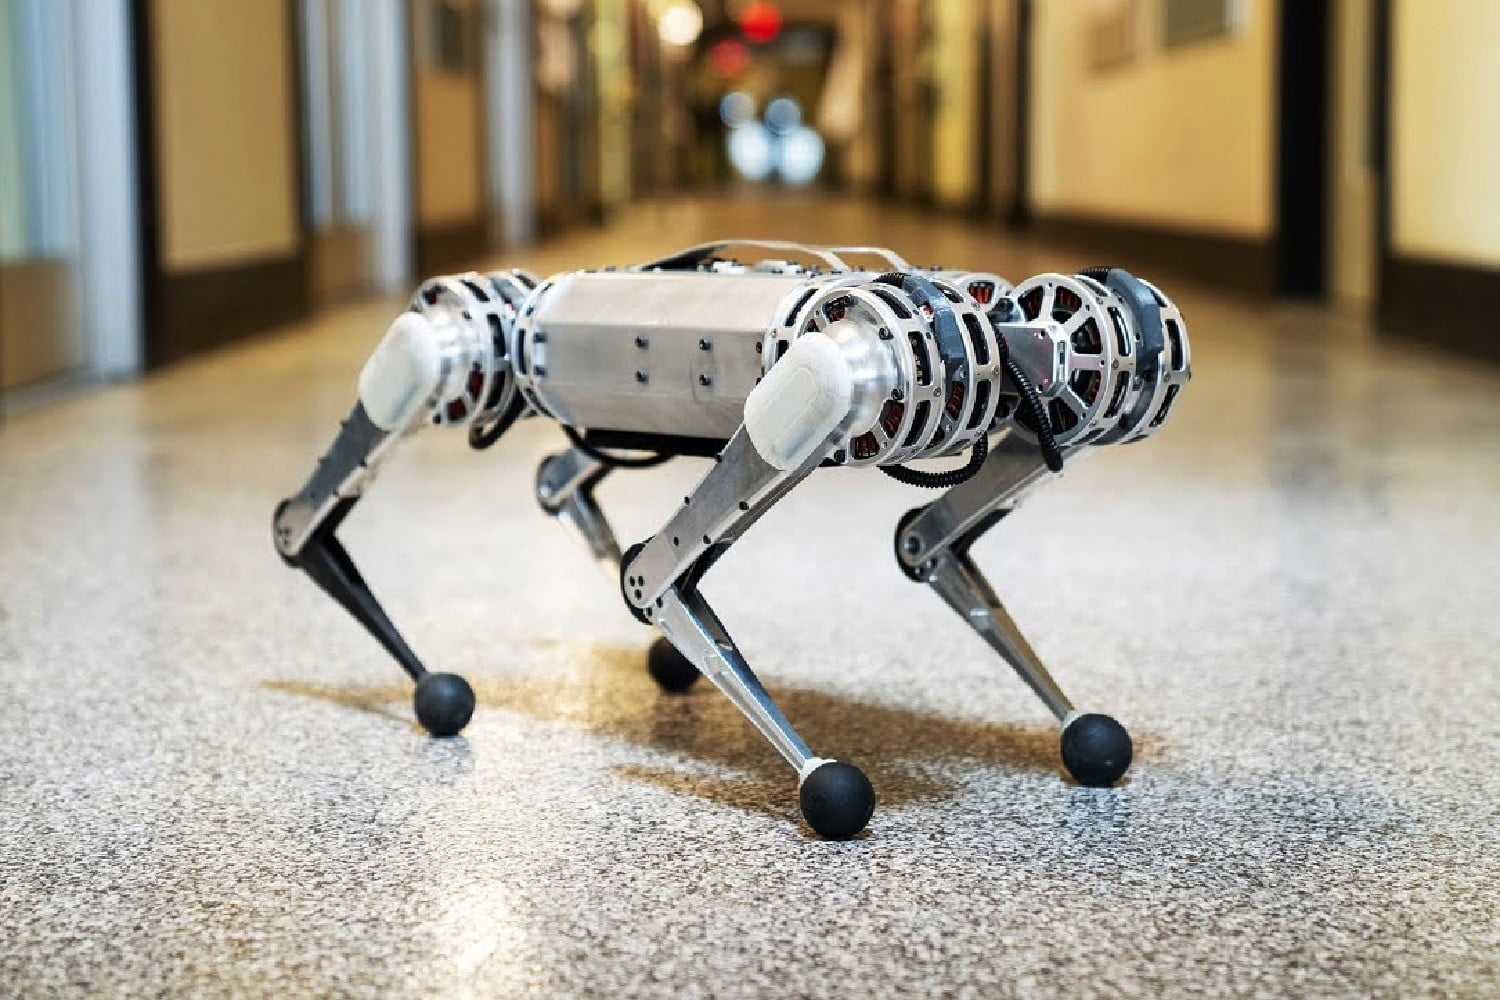 Відео дня: Mini Cheetah - перший чотириногий робот, який вміє робити зворотне сальто